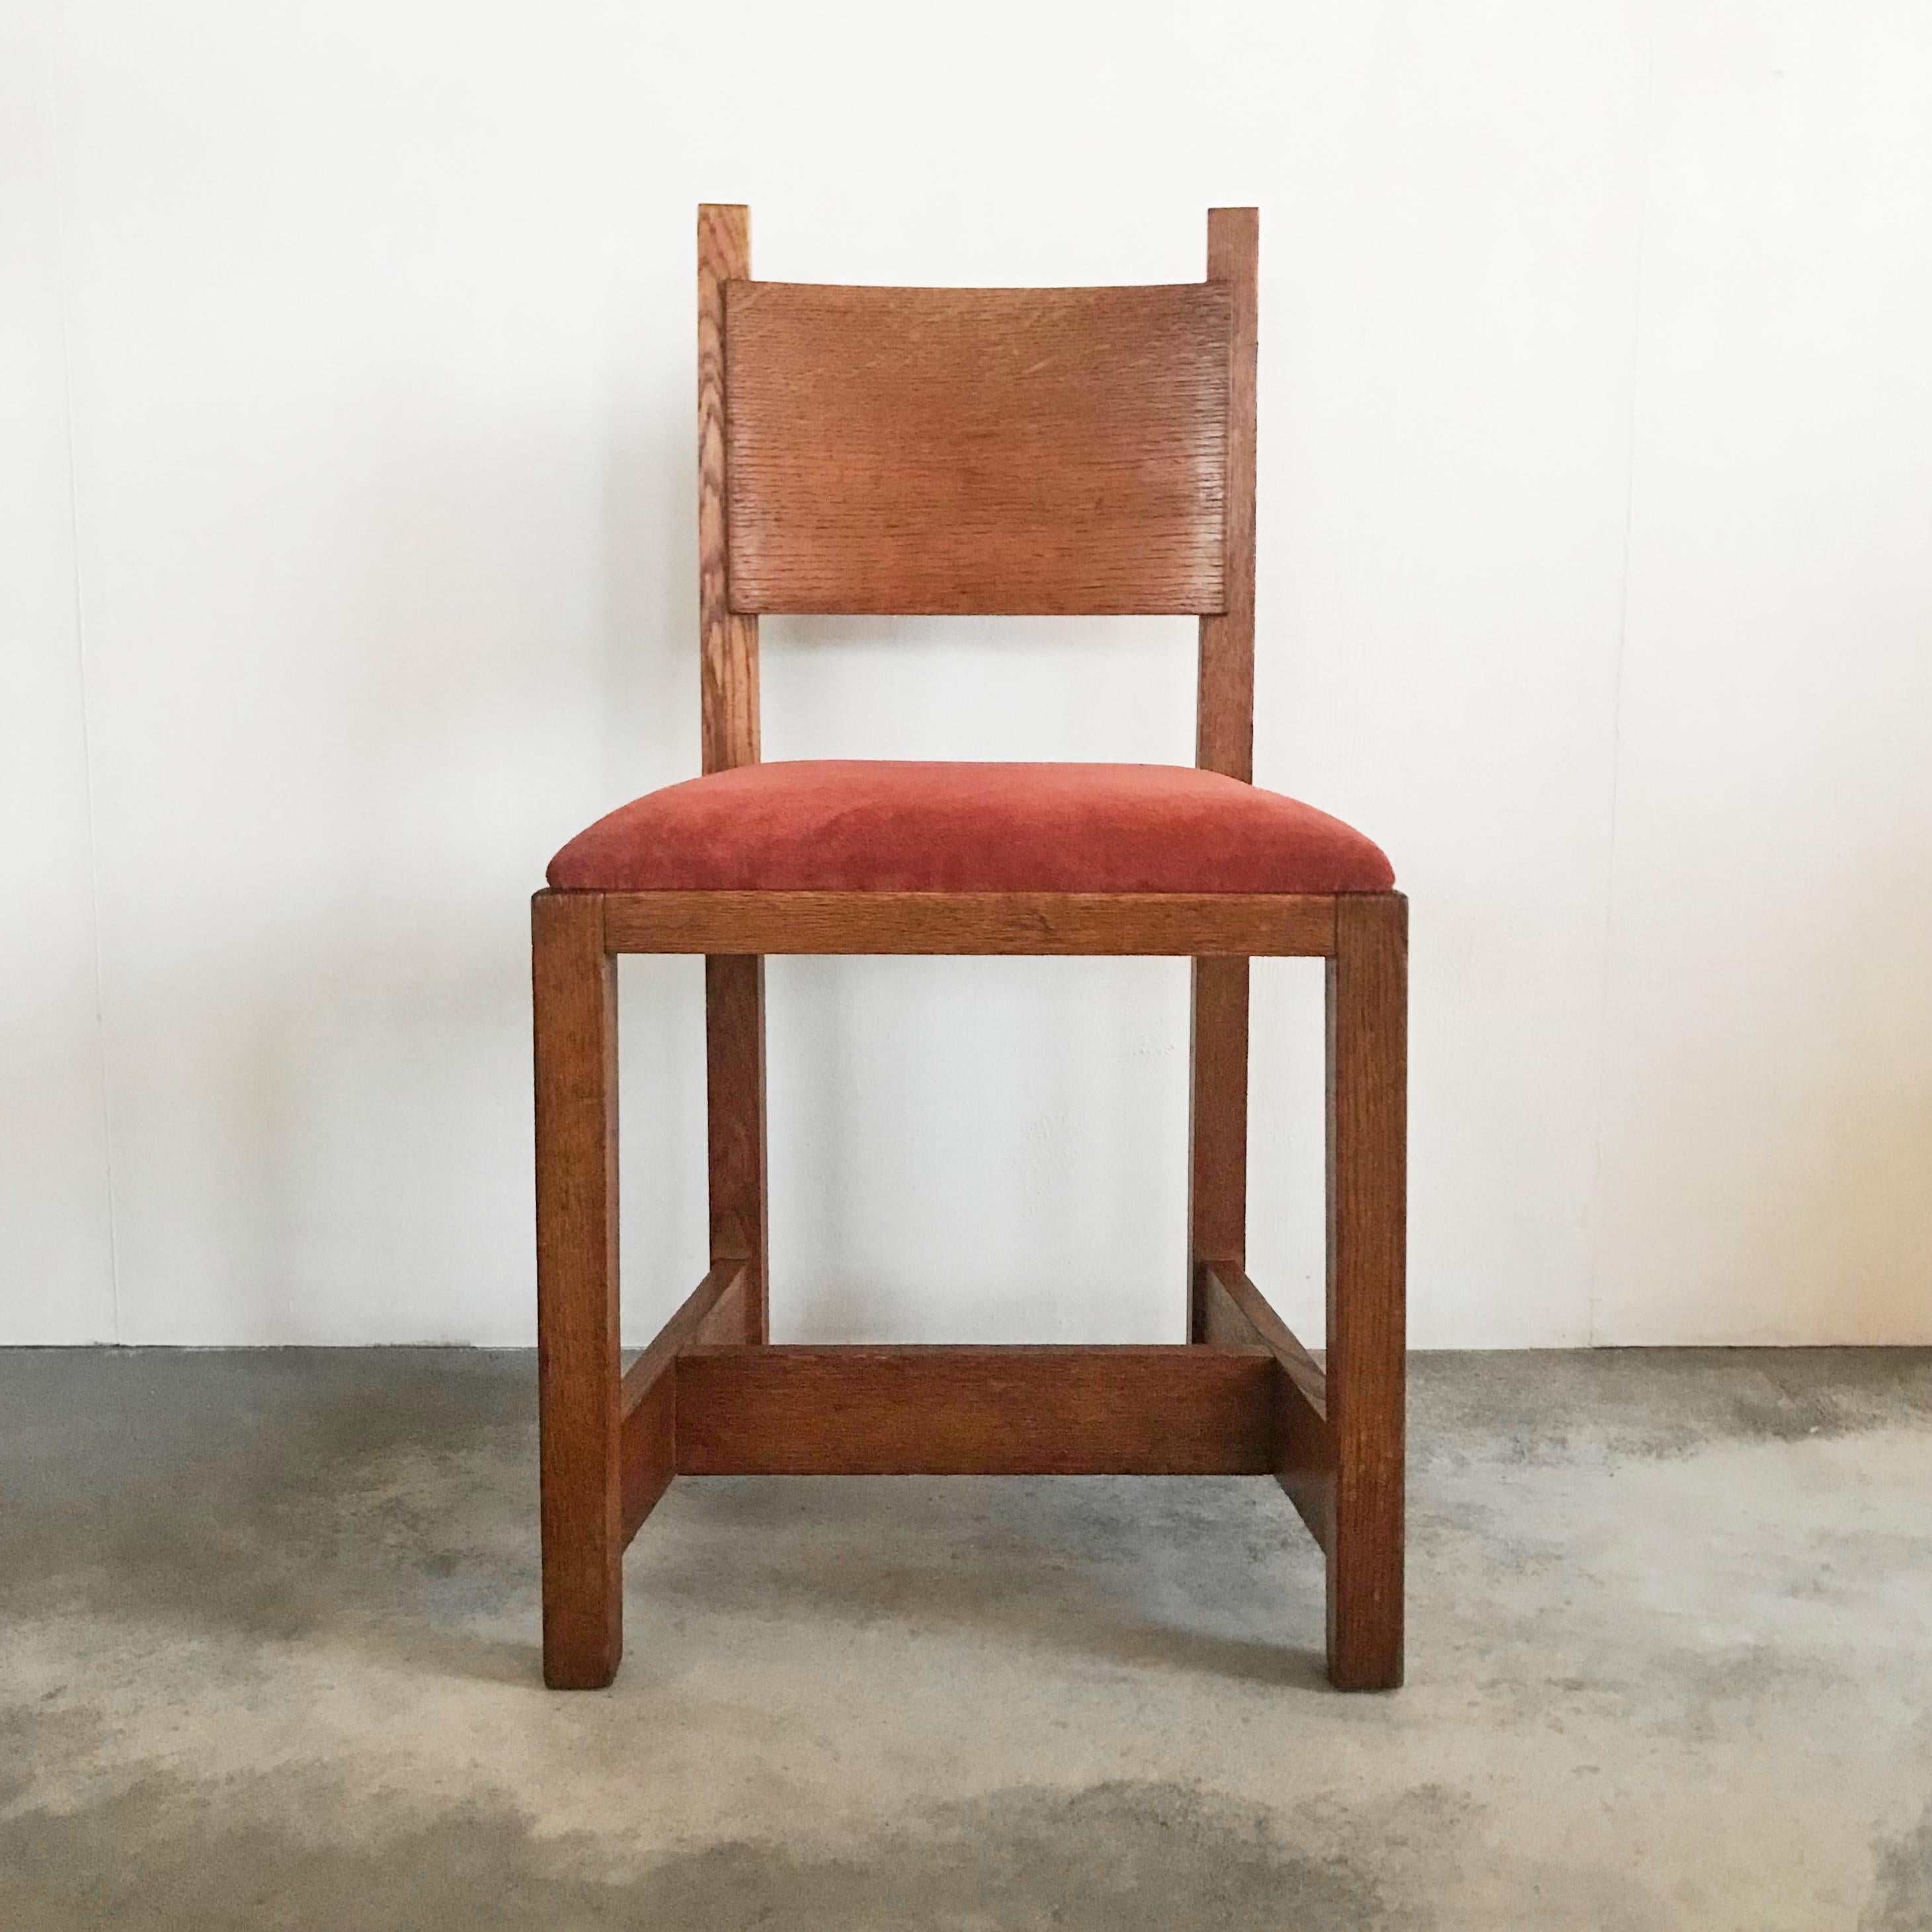 Chaise d'appoint 'Haagse School' par Pander, Pays-Bas, années 1930.

Magnifique chaise d'appoint en chêne et velours fabriquée par H. Pander dans le style 